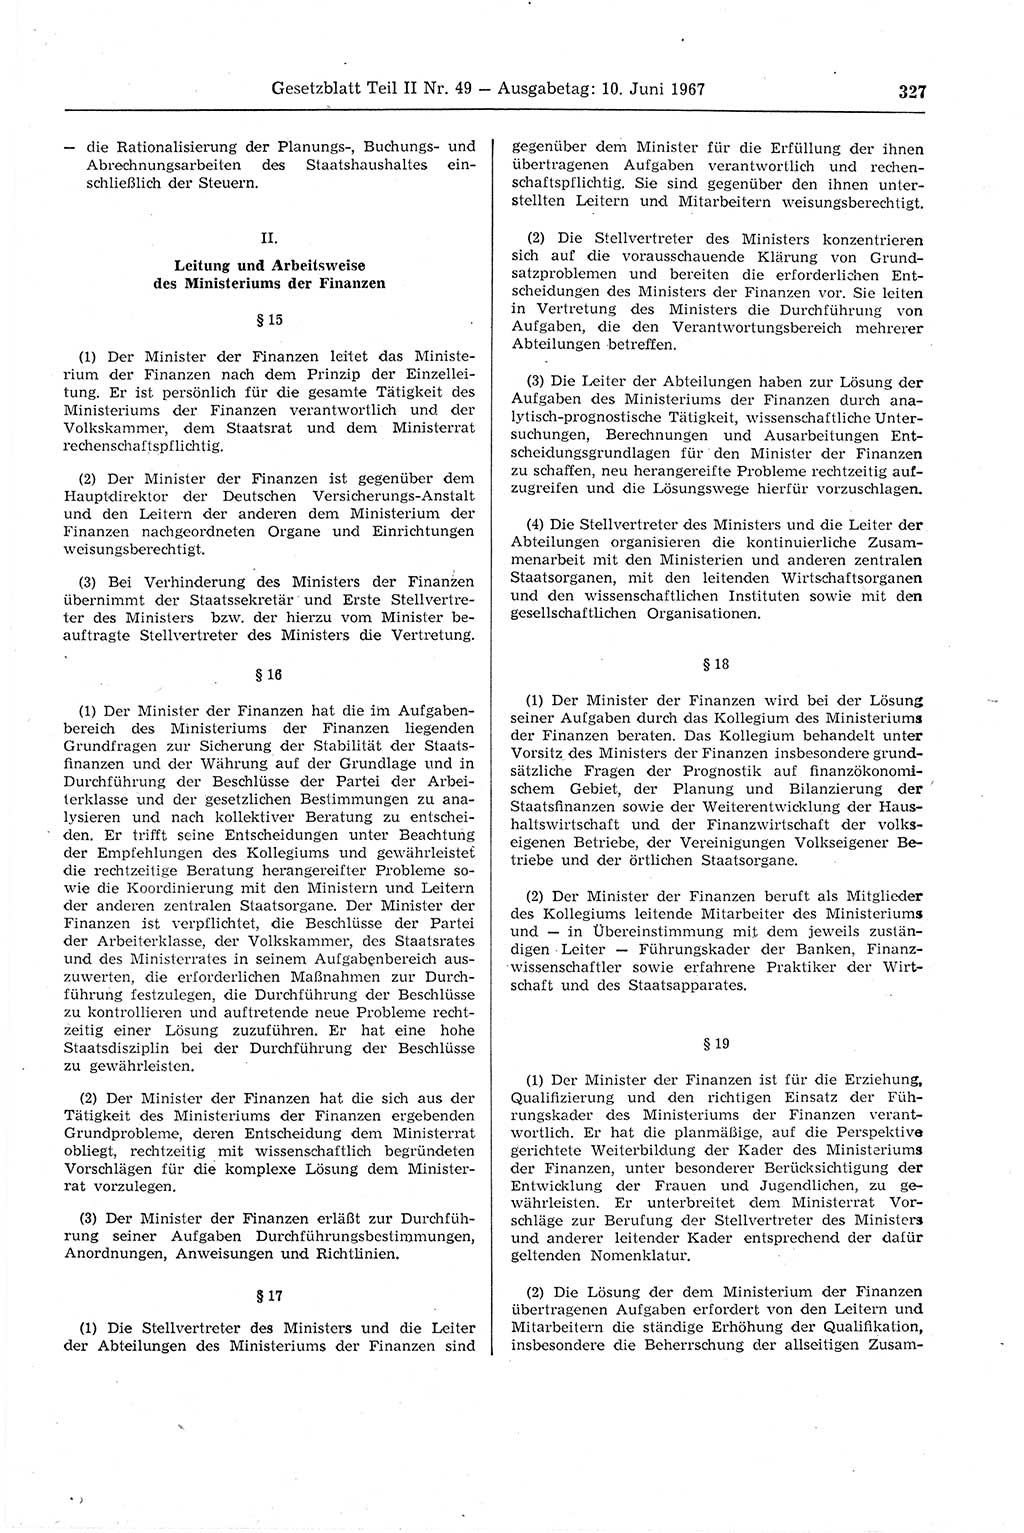 Gesetzblatt (GBl.) der Deutschen Demokratischen Republik (DDR) Teil ⅠⅠ 1967, Seite 327 (GBl. DDR ⅠⅠ 1967, S. 327)